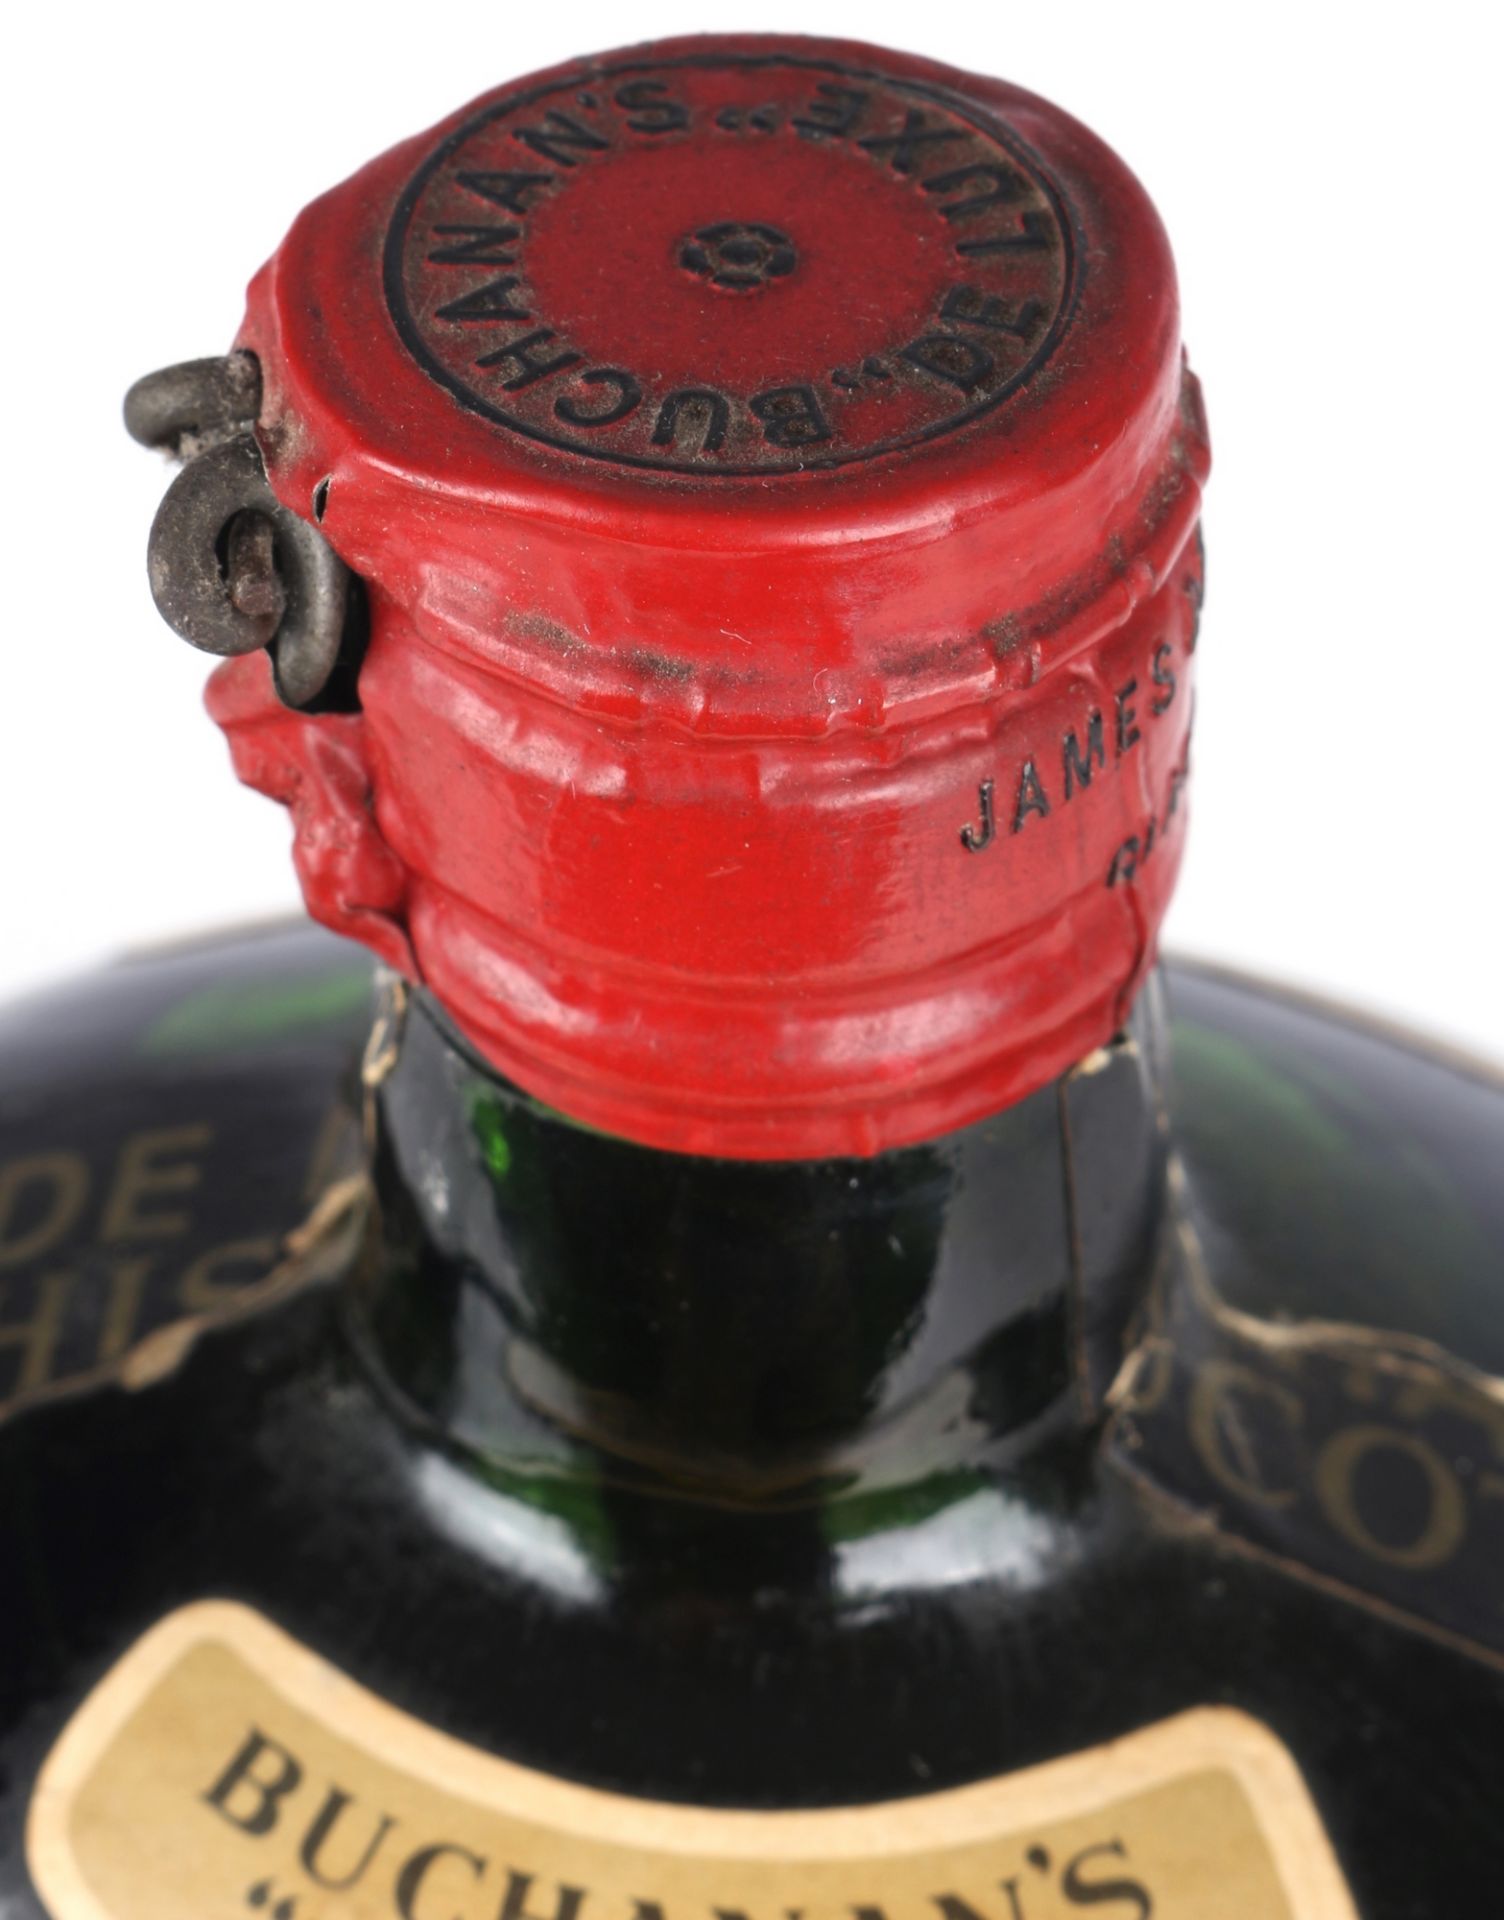 Buchanan's De Luxe Blended Scotch Whisky - Bild 4 aus 5